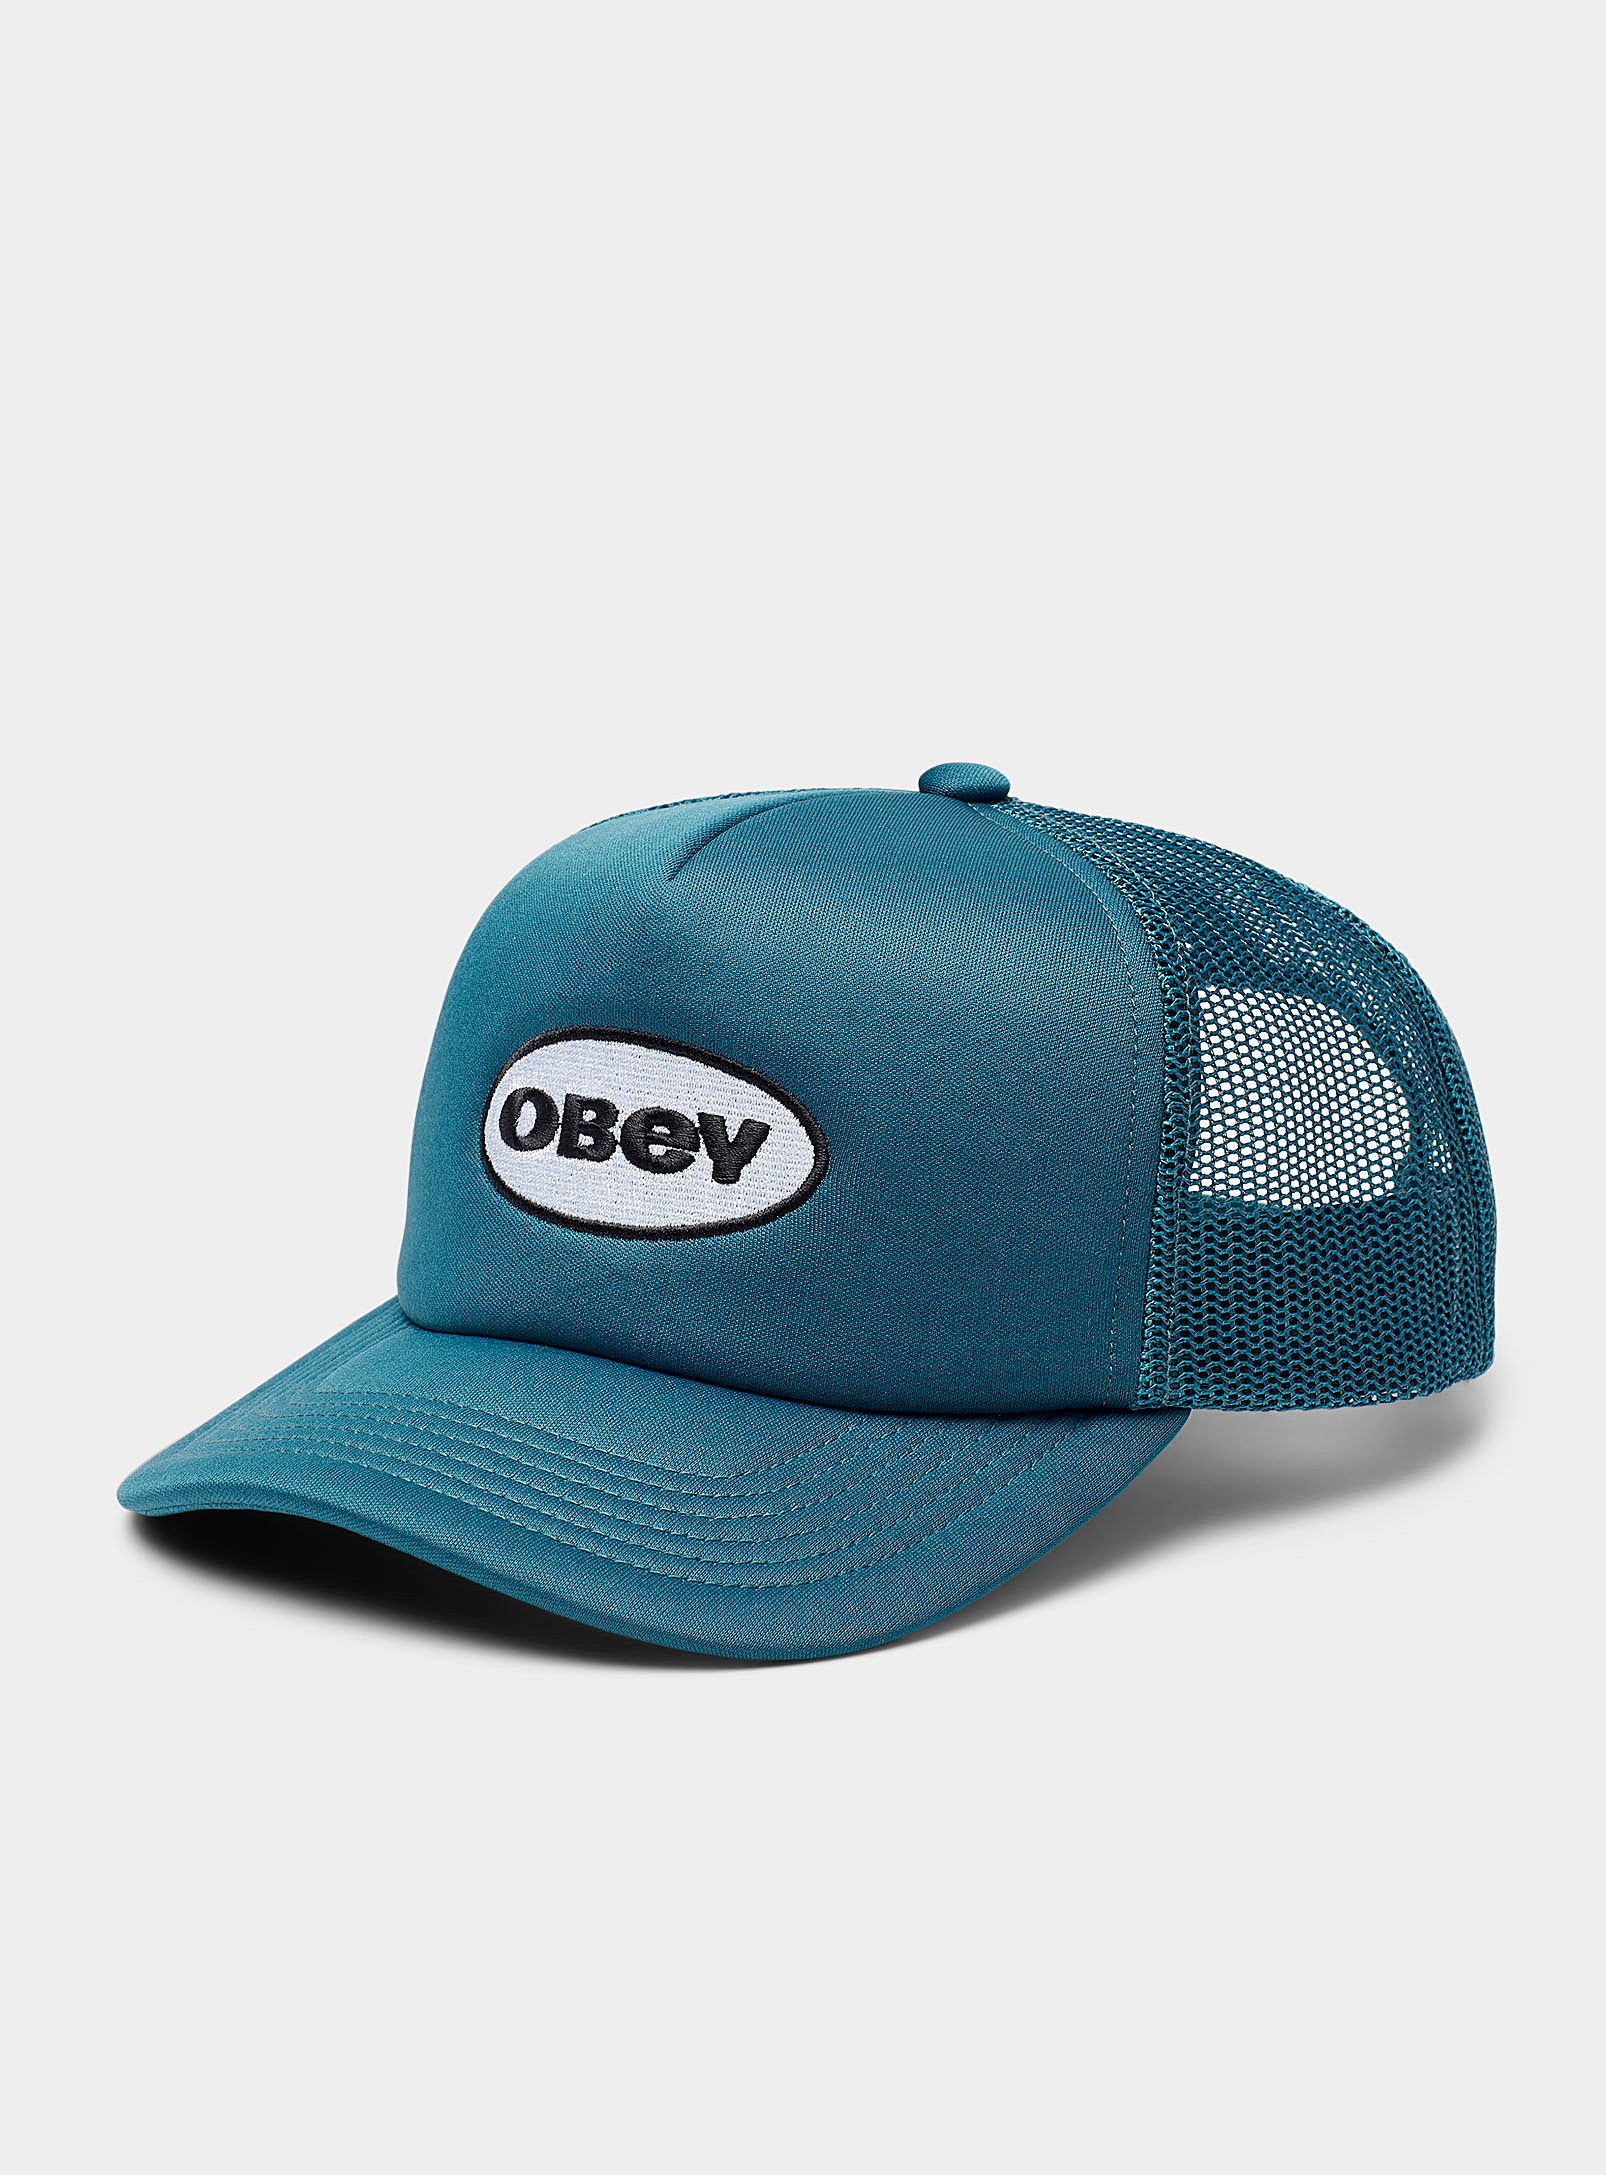 Obey - La casquette camionneur logo ovale